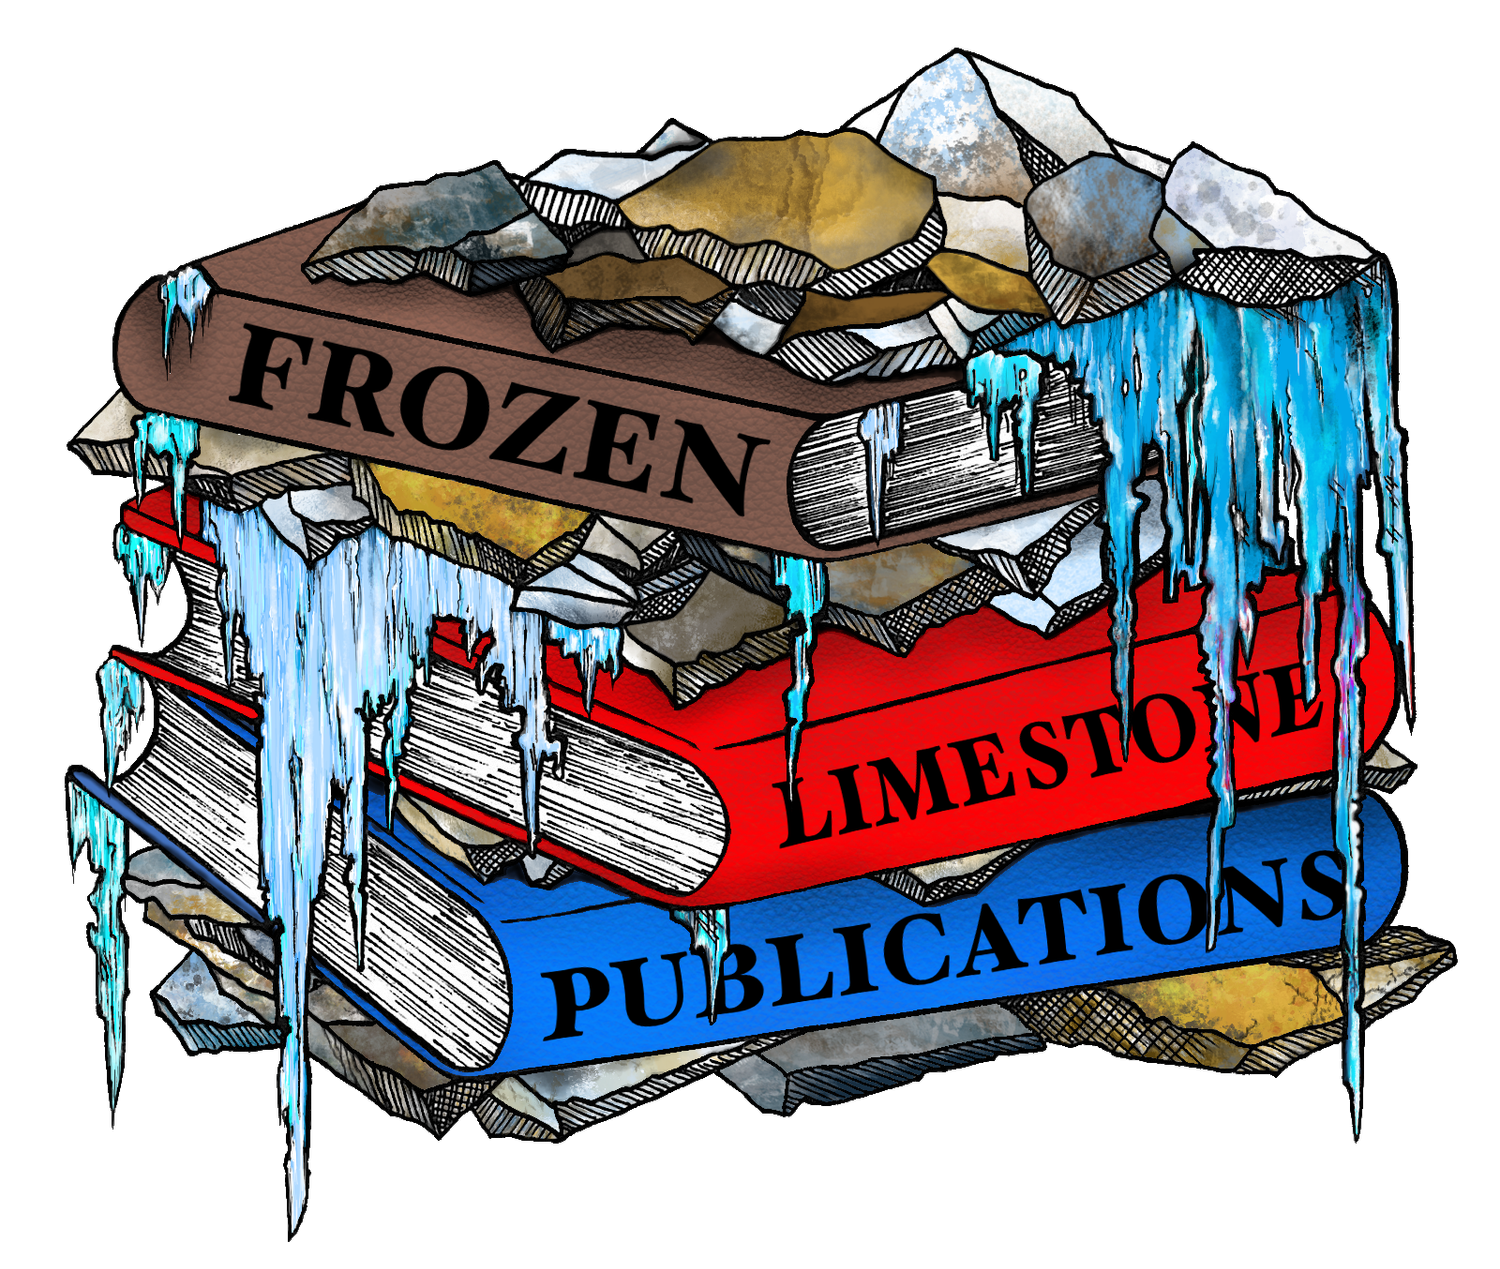 Frozen Limestone Publications